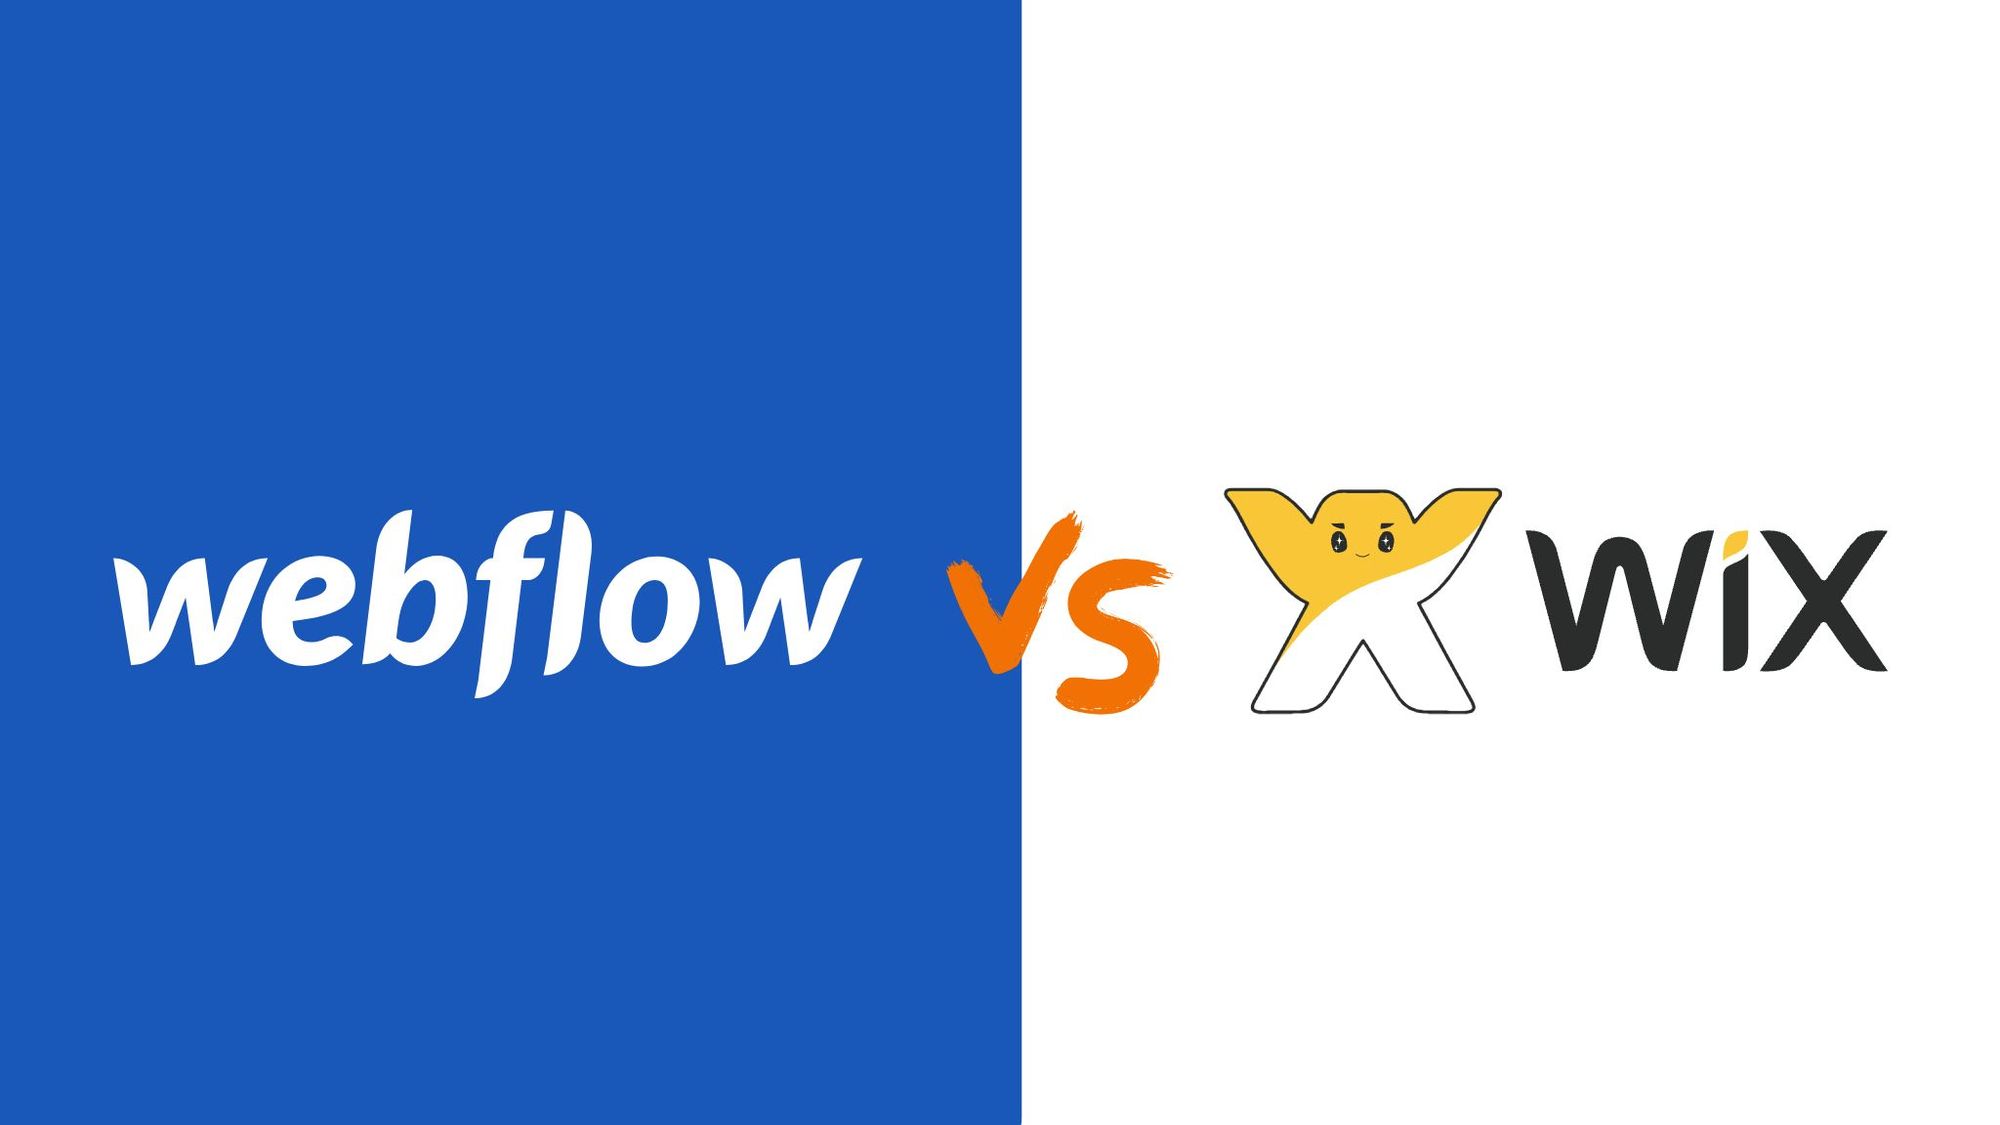 Webflow vs Wix 差異? 超詳解比較